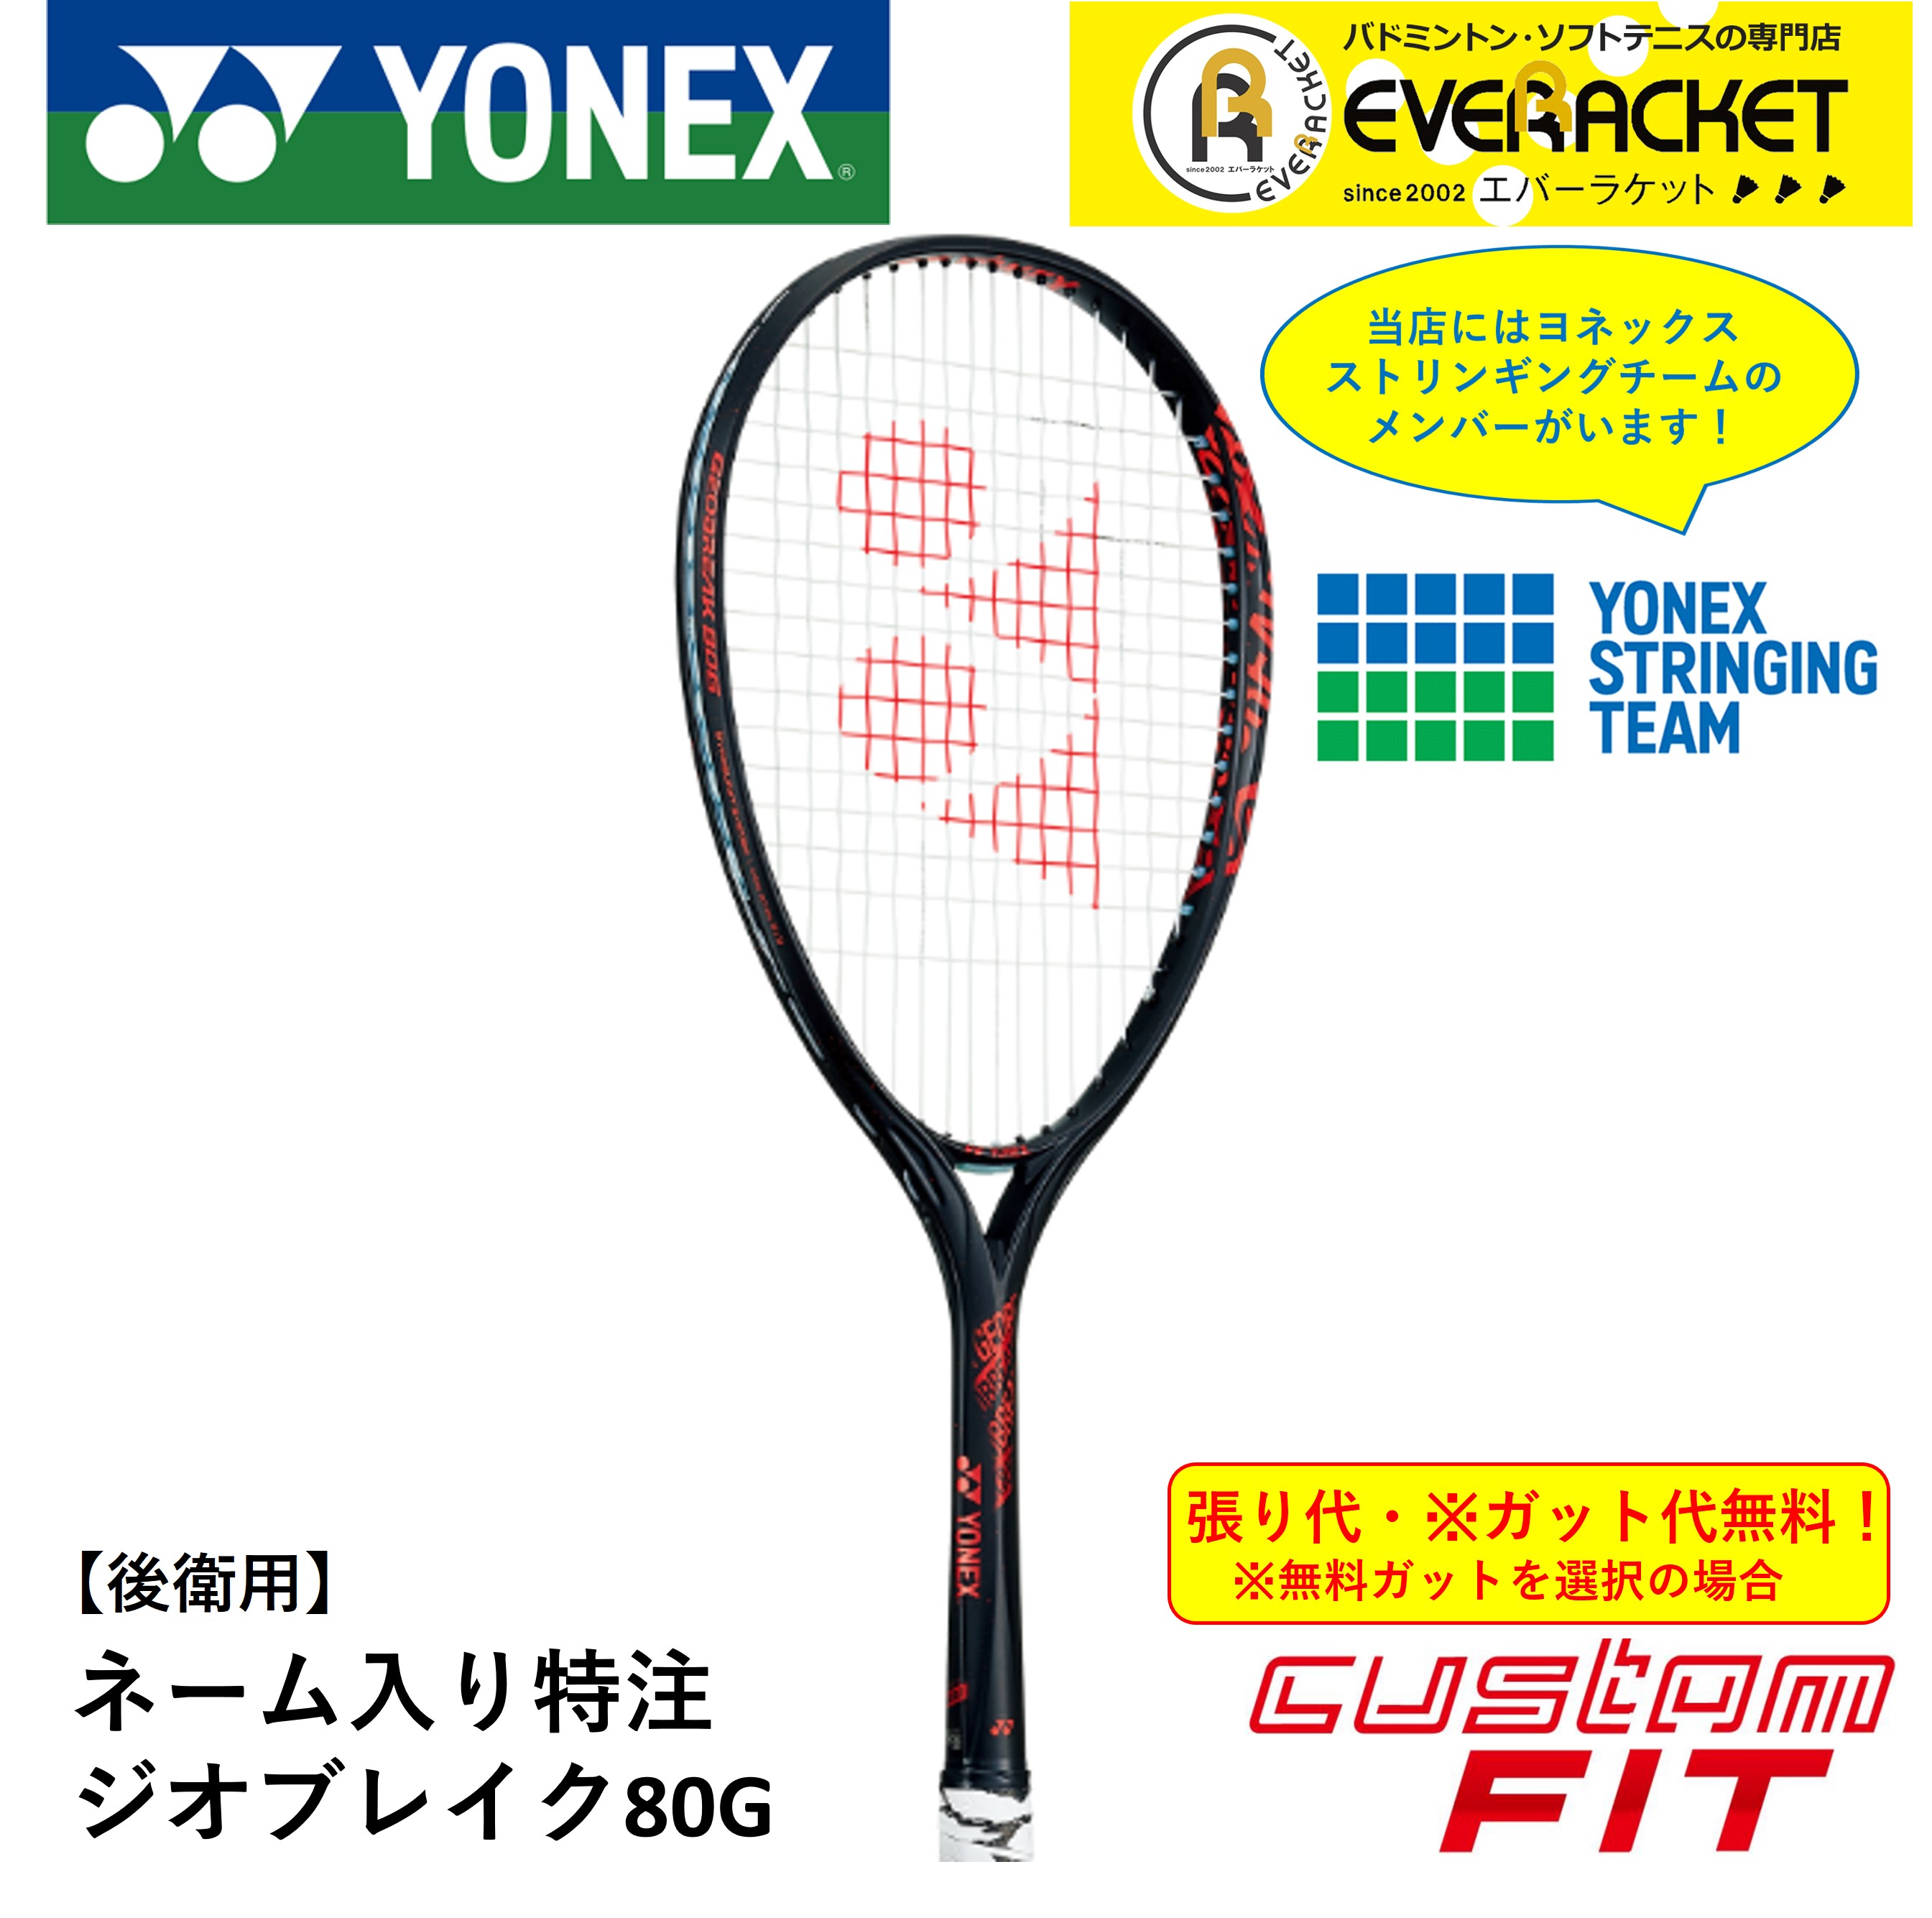 ジオブレイク80G カスタム ヨネックスソフトテニスラケット-